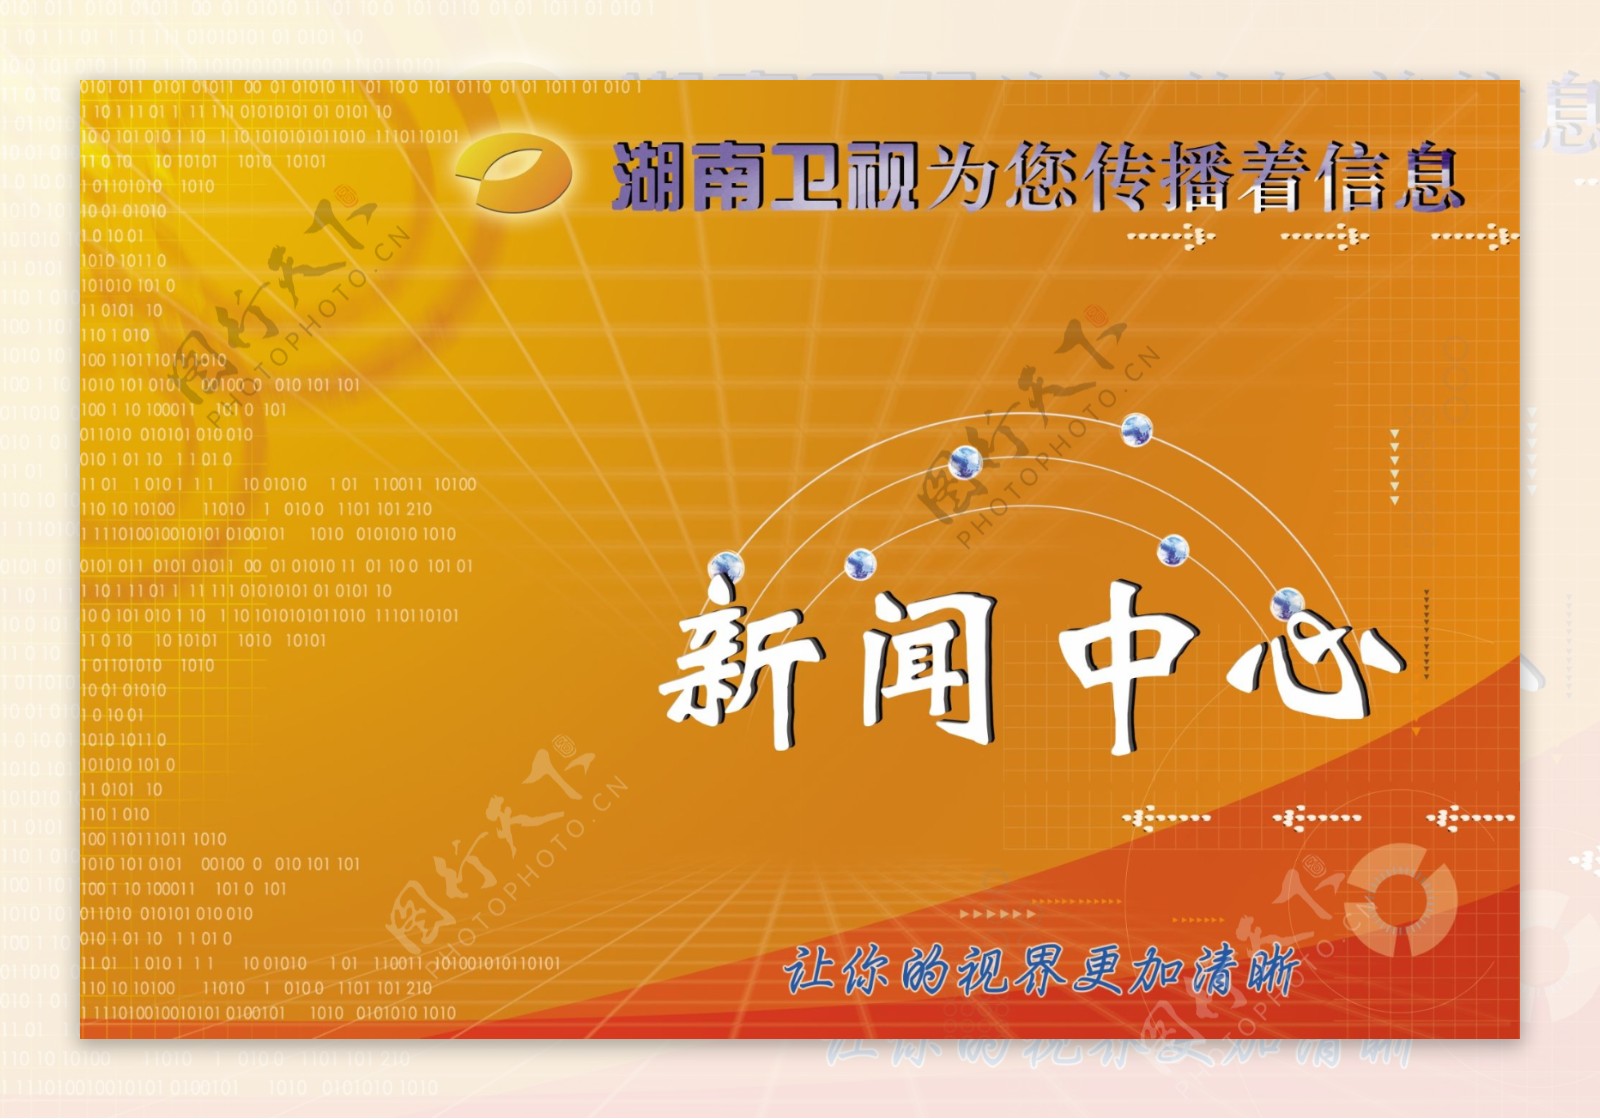 中国原创湖南广播电视总台新闻背景图片